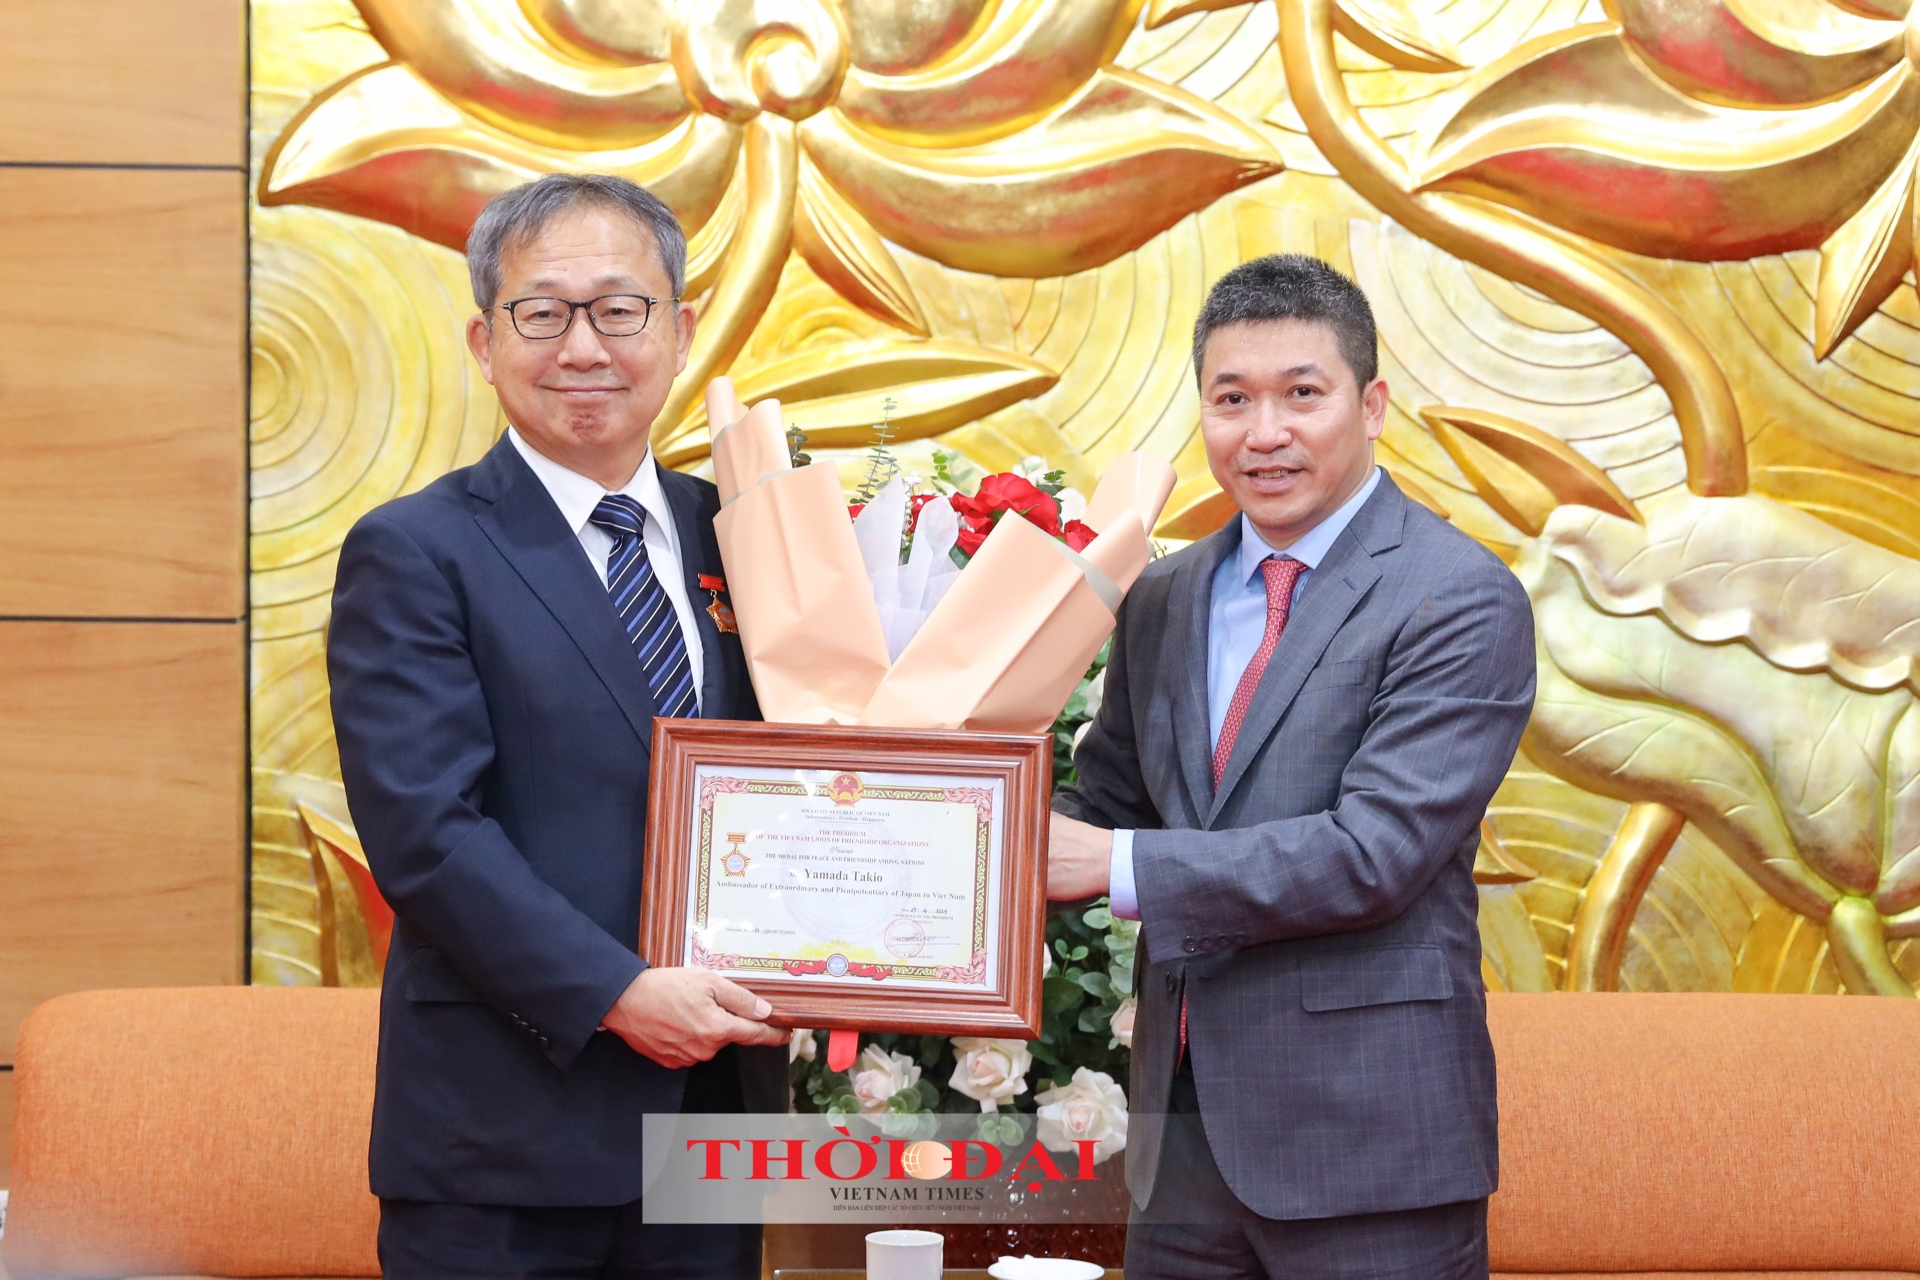 越南友好组织联合会主席潘英山向日本驻越大使山田贵雄（Yamada Takio）授予“致力于各民族和平友谊”纪念章。